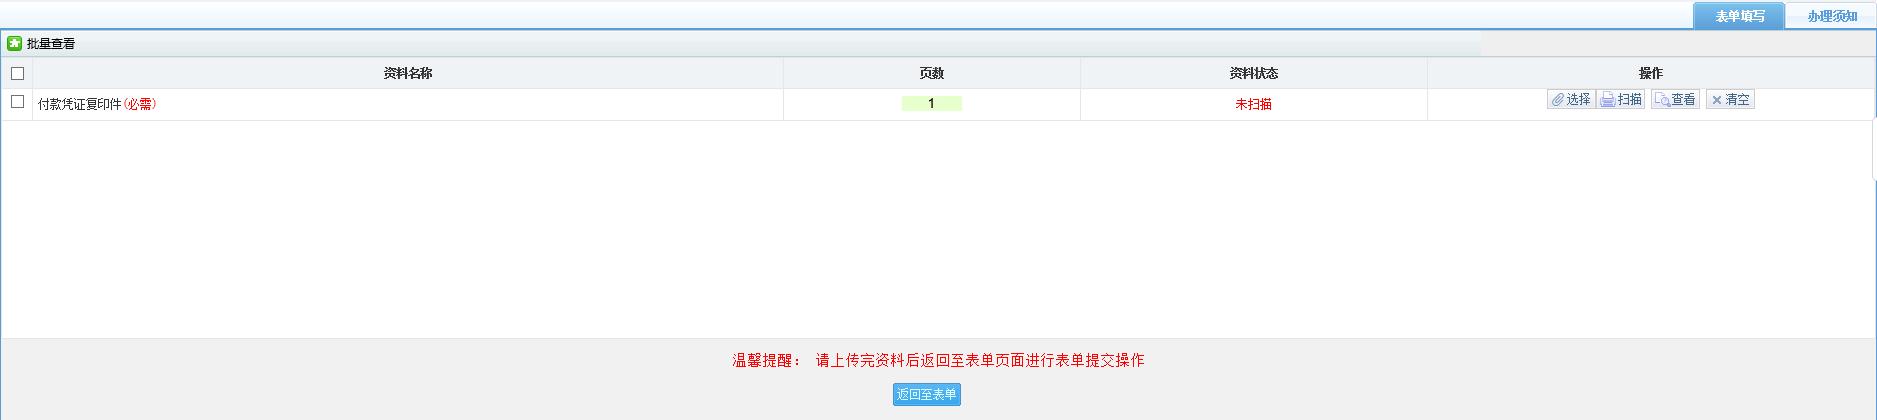 保存河南省电子税务局欠税人处置不动产或者大额资产报告表信息